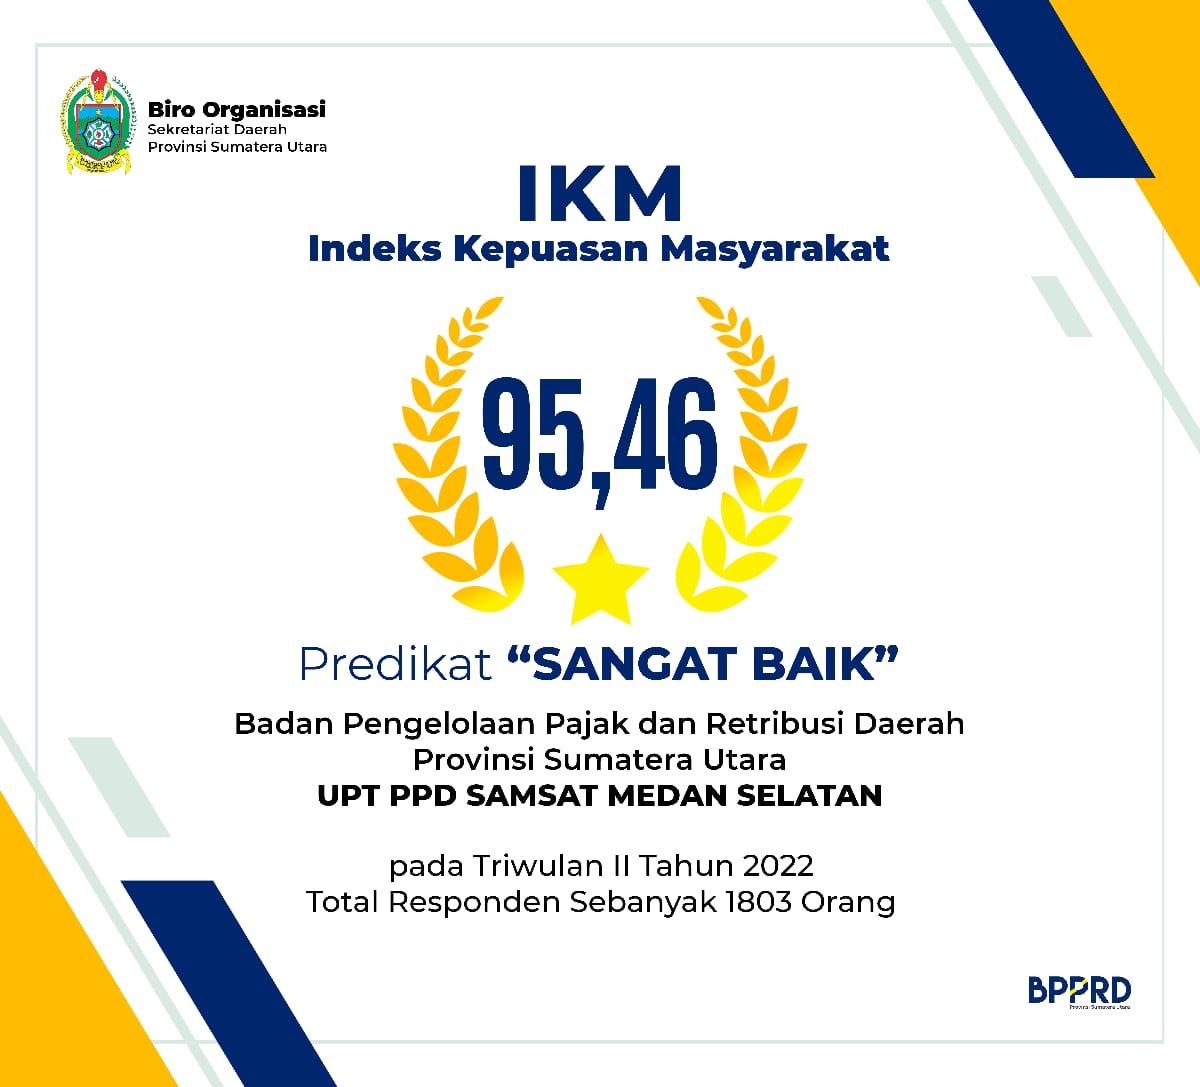 IKM SAMSAT Medan Selatan